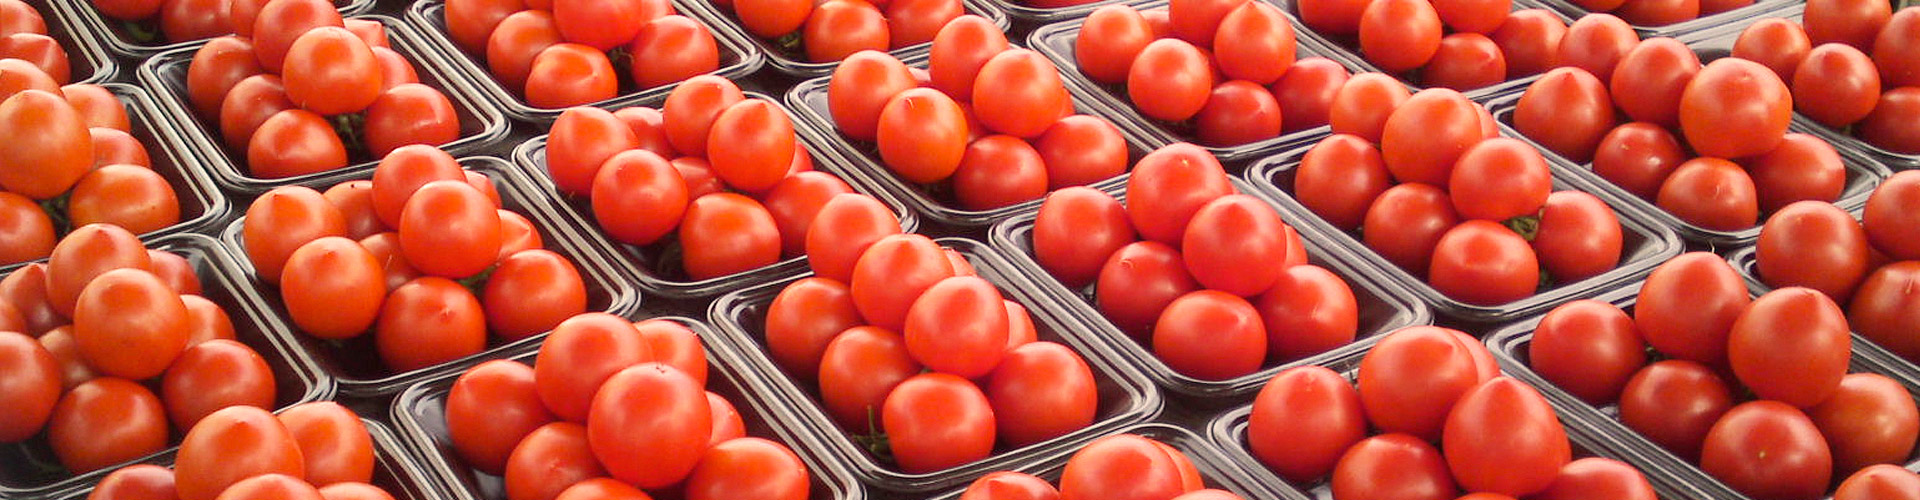 Nuevo récord de exportación de tomate de los últimos 20 años